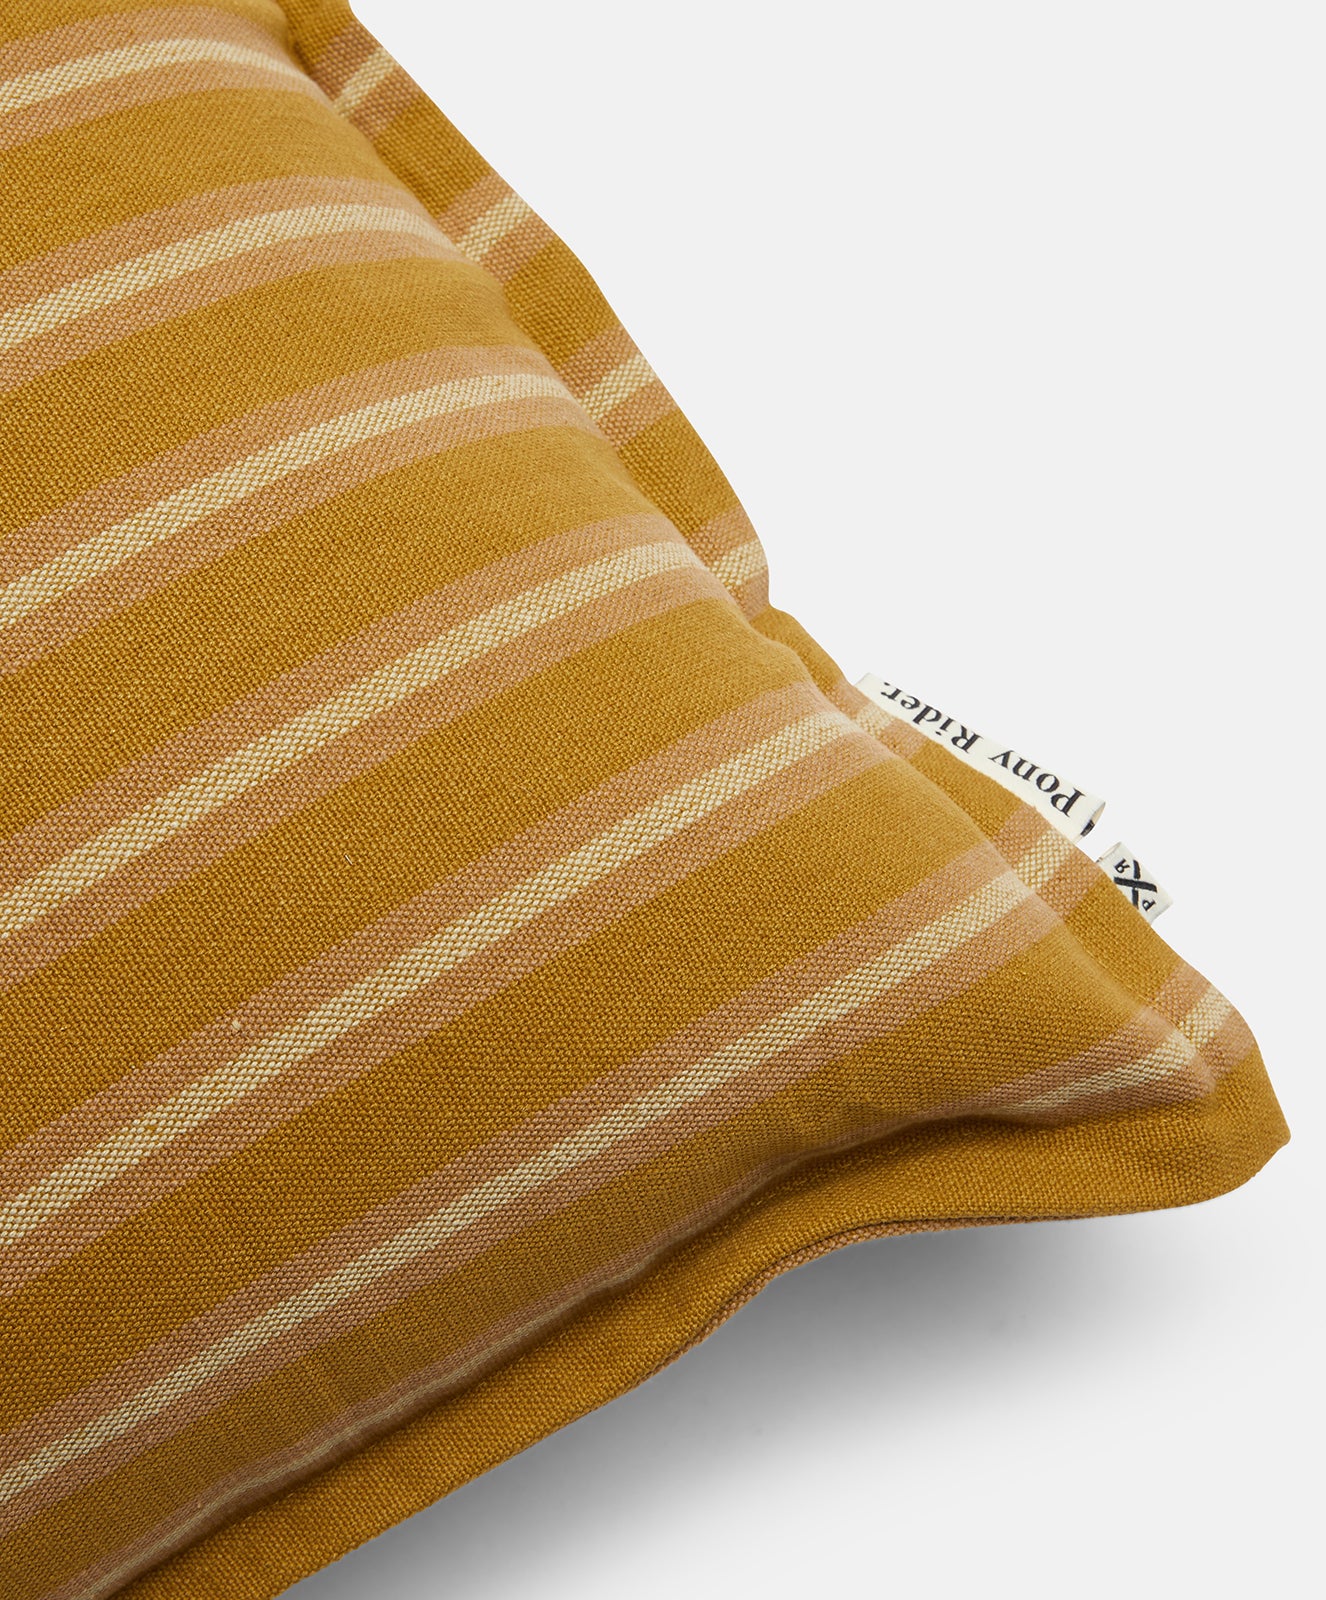 Woven Safari Striped Cushion | Safari